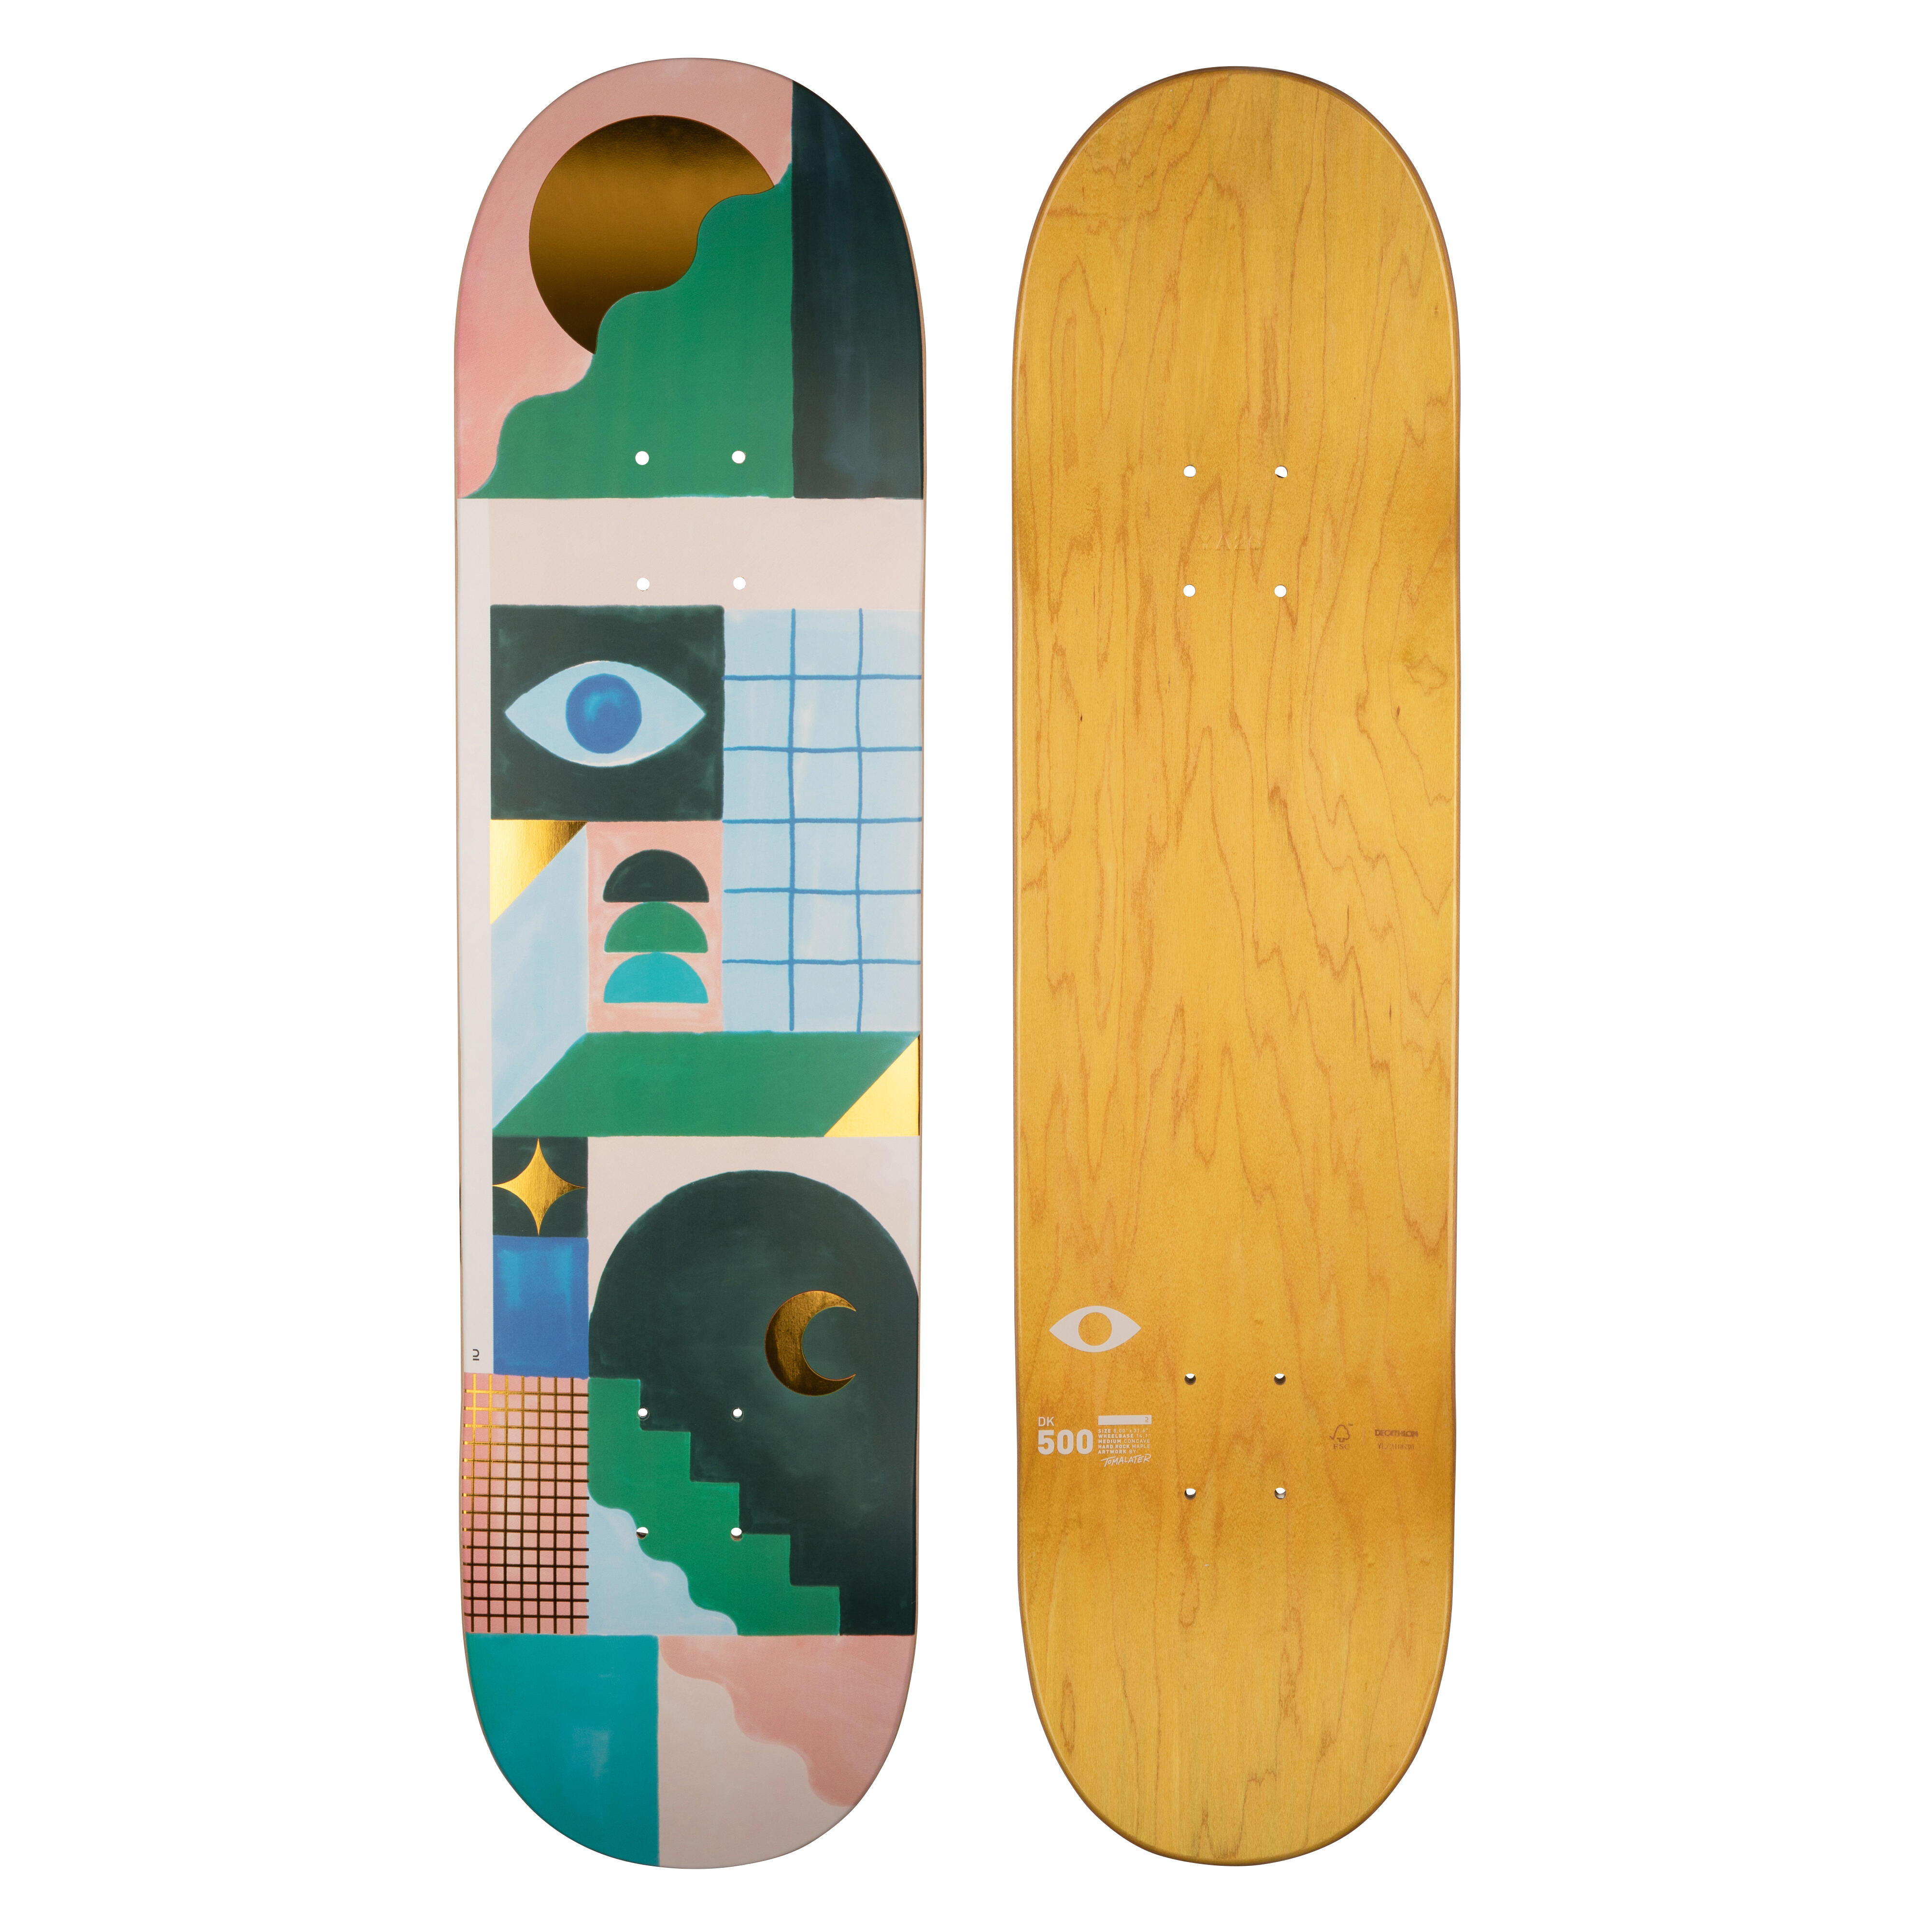 Placă skateboard DK500 Mărimea 8″Grafică de @TOMALATER @TOMALATER imagine noua